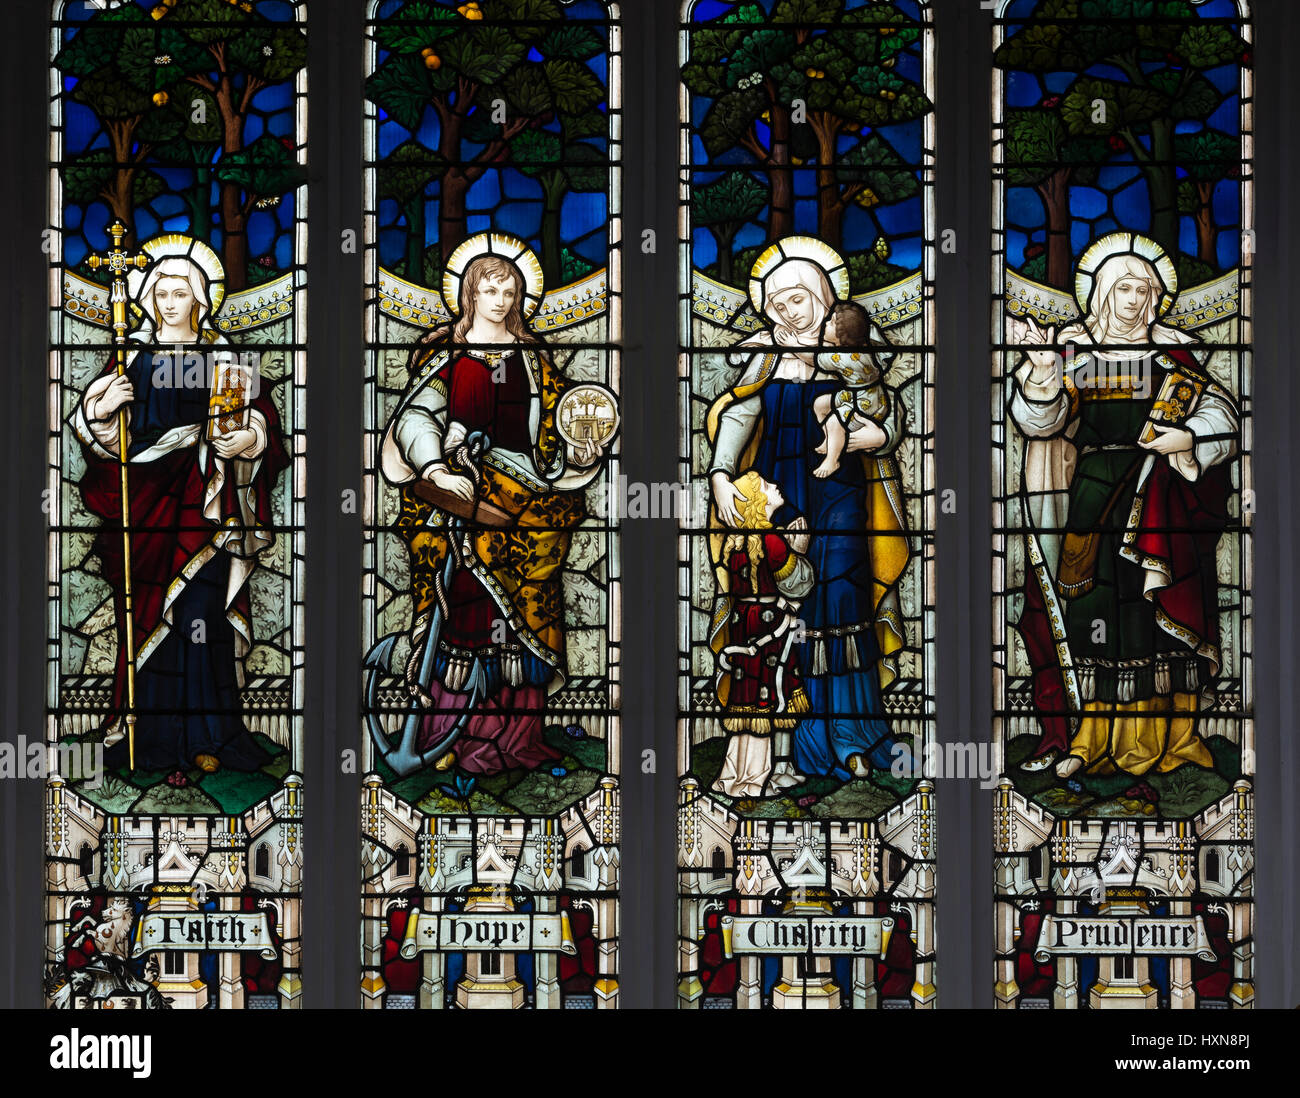 La fede, la speranza della carità e prudenza in vetro colorato, San Pietro e la chiesa di St Paul, Wisbech, Cambridgeshire, England, Regno Unito Foto Stock